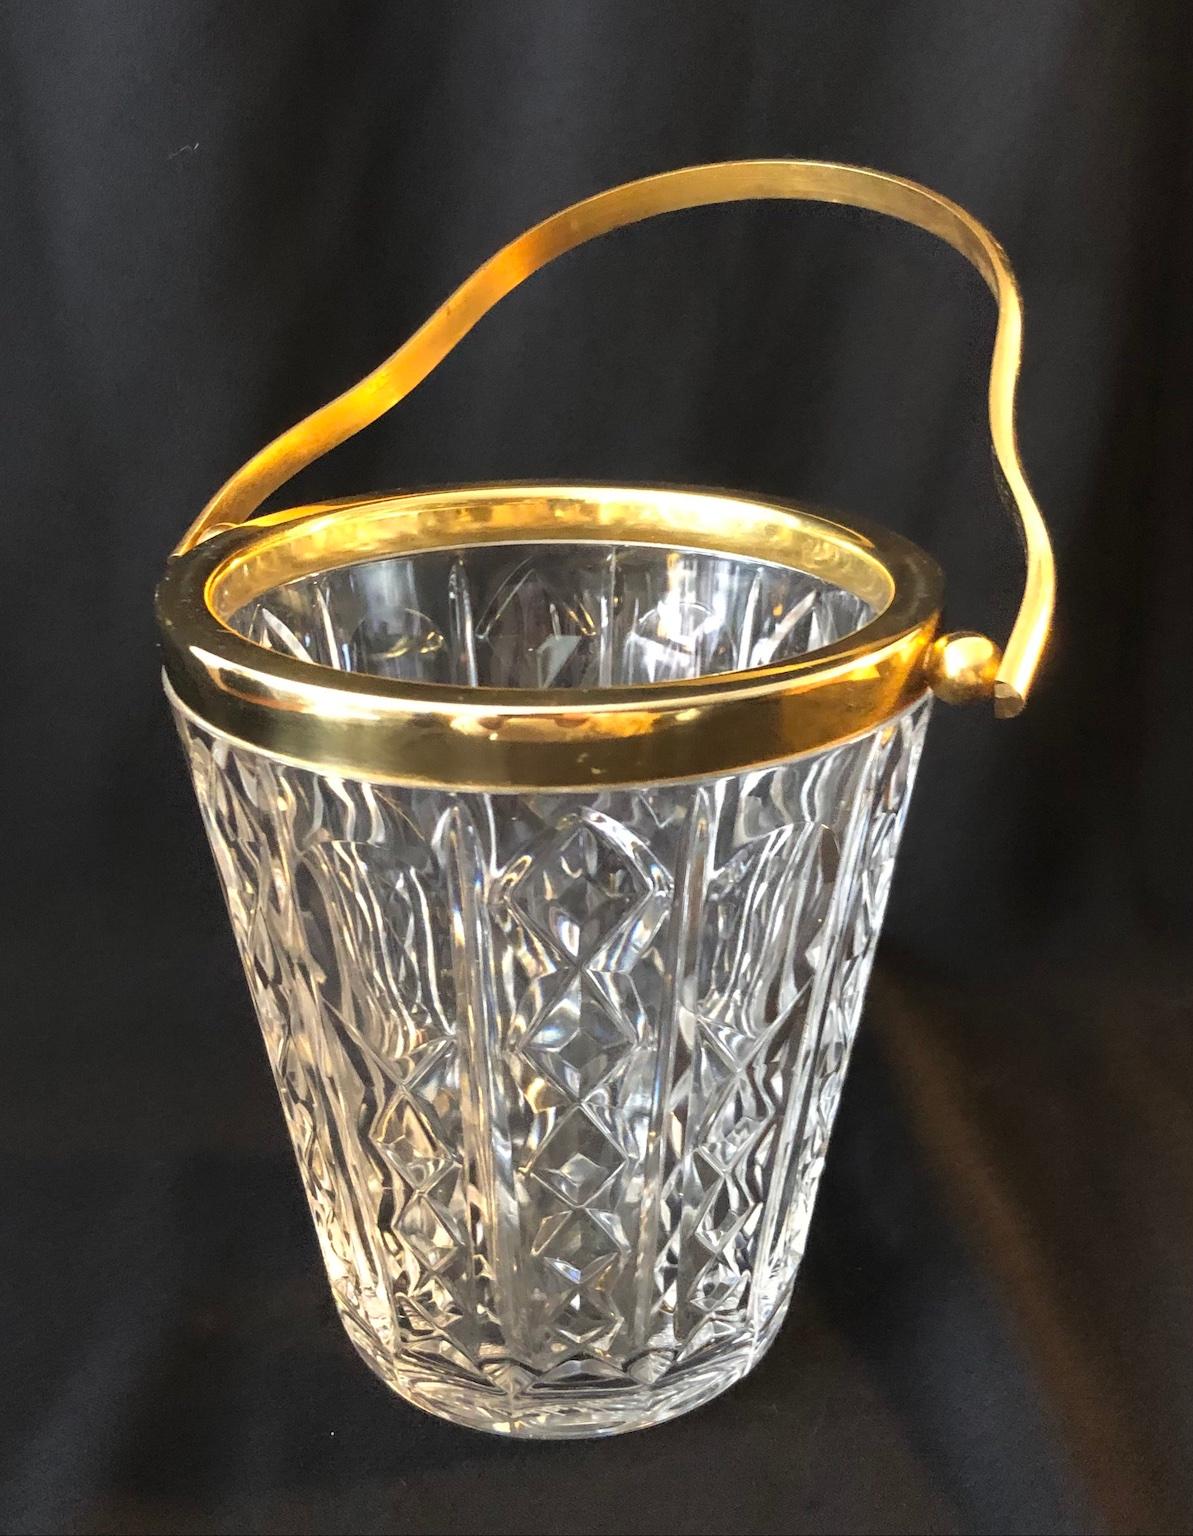 Cocktail-Eiskübel aus Val St Lambert-Kristall und vergoldet, Belgien, 1950er Jahre.

Ein wunderschön geschliffener Eiskübel aus Kristall, hergestellt in Belgien von dem renommierten Haus Val Saint Lambert, ca. 1950er Jahre.

Dieser Eiskübel von